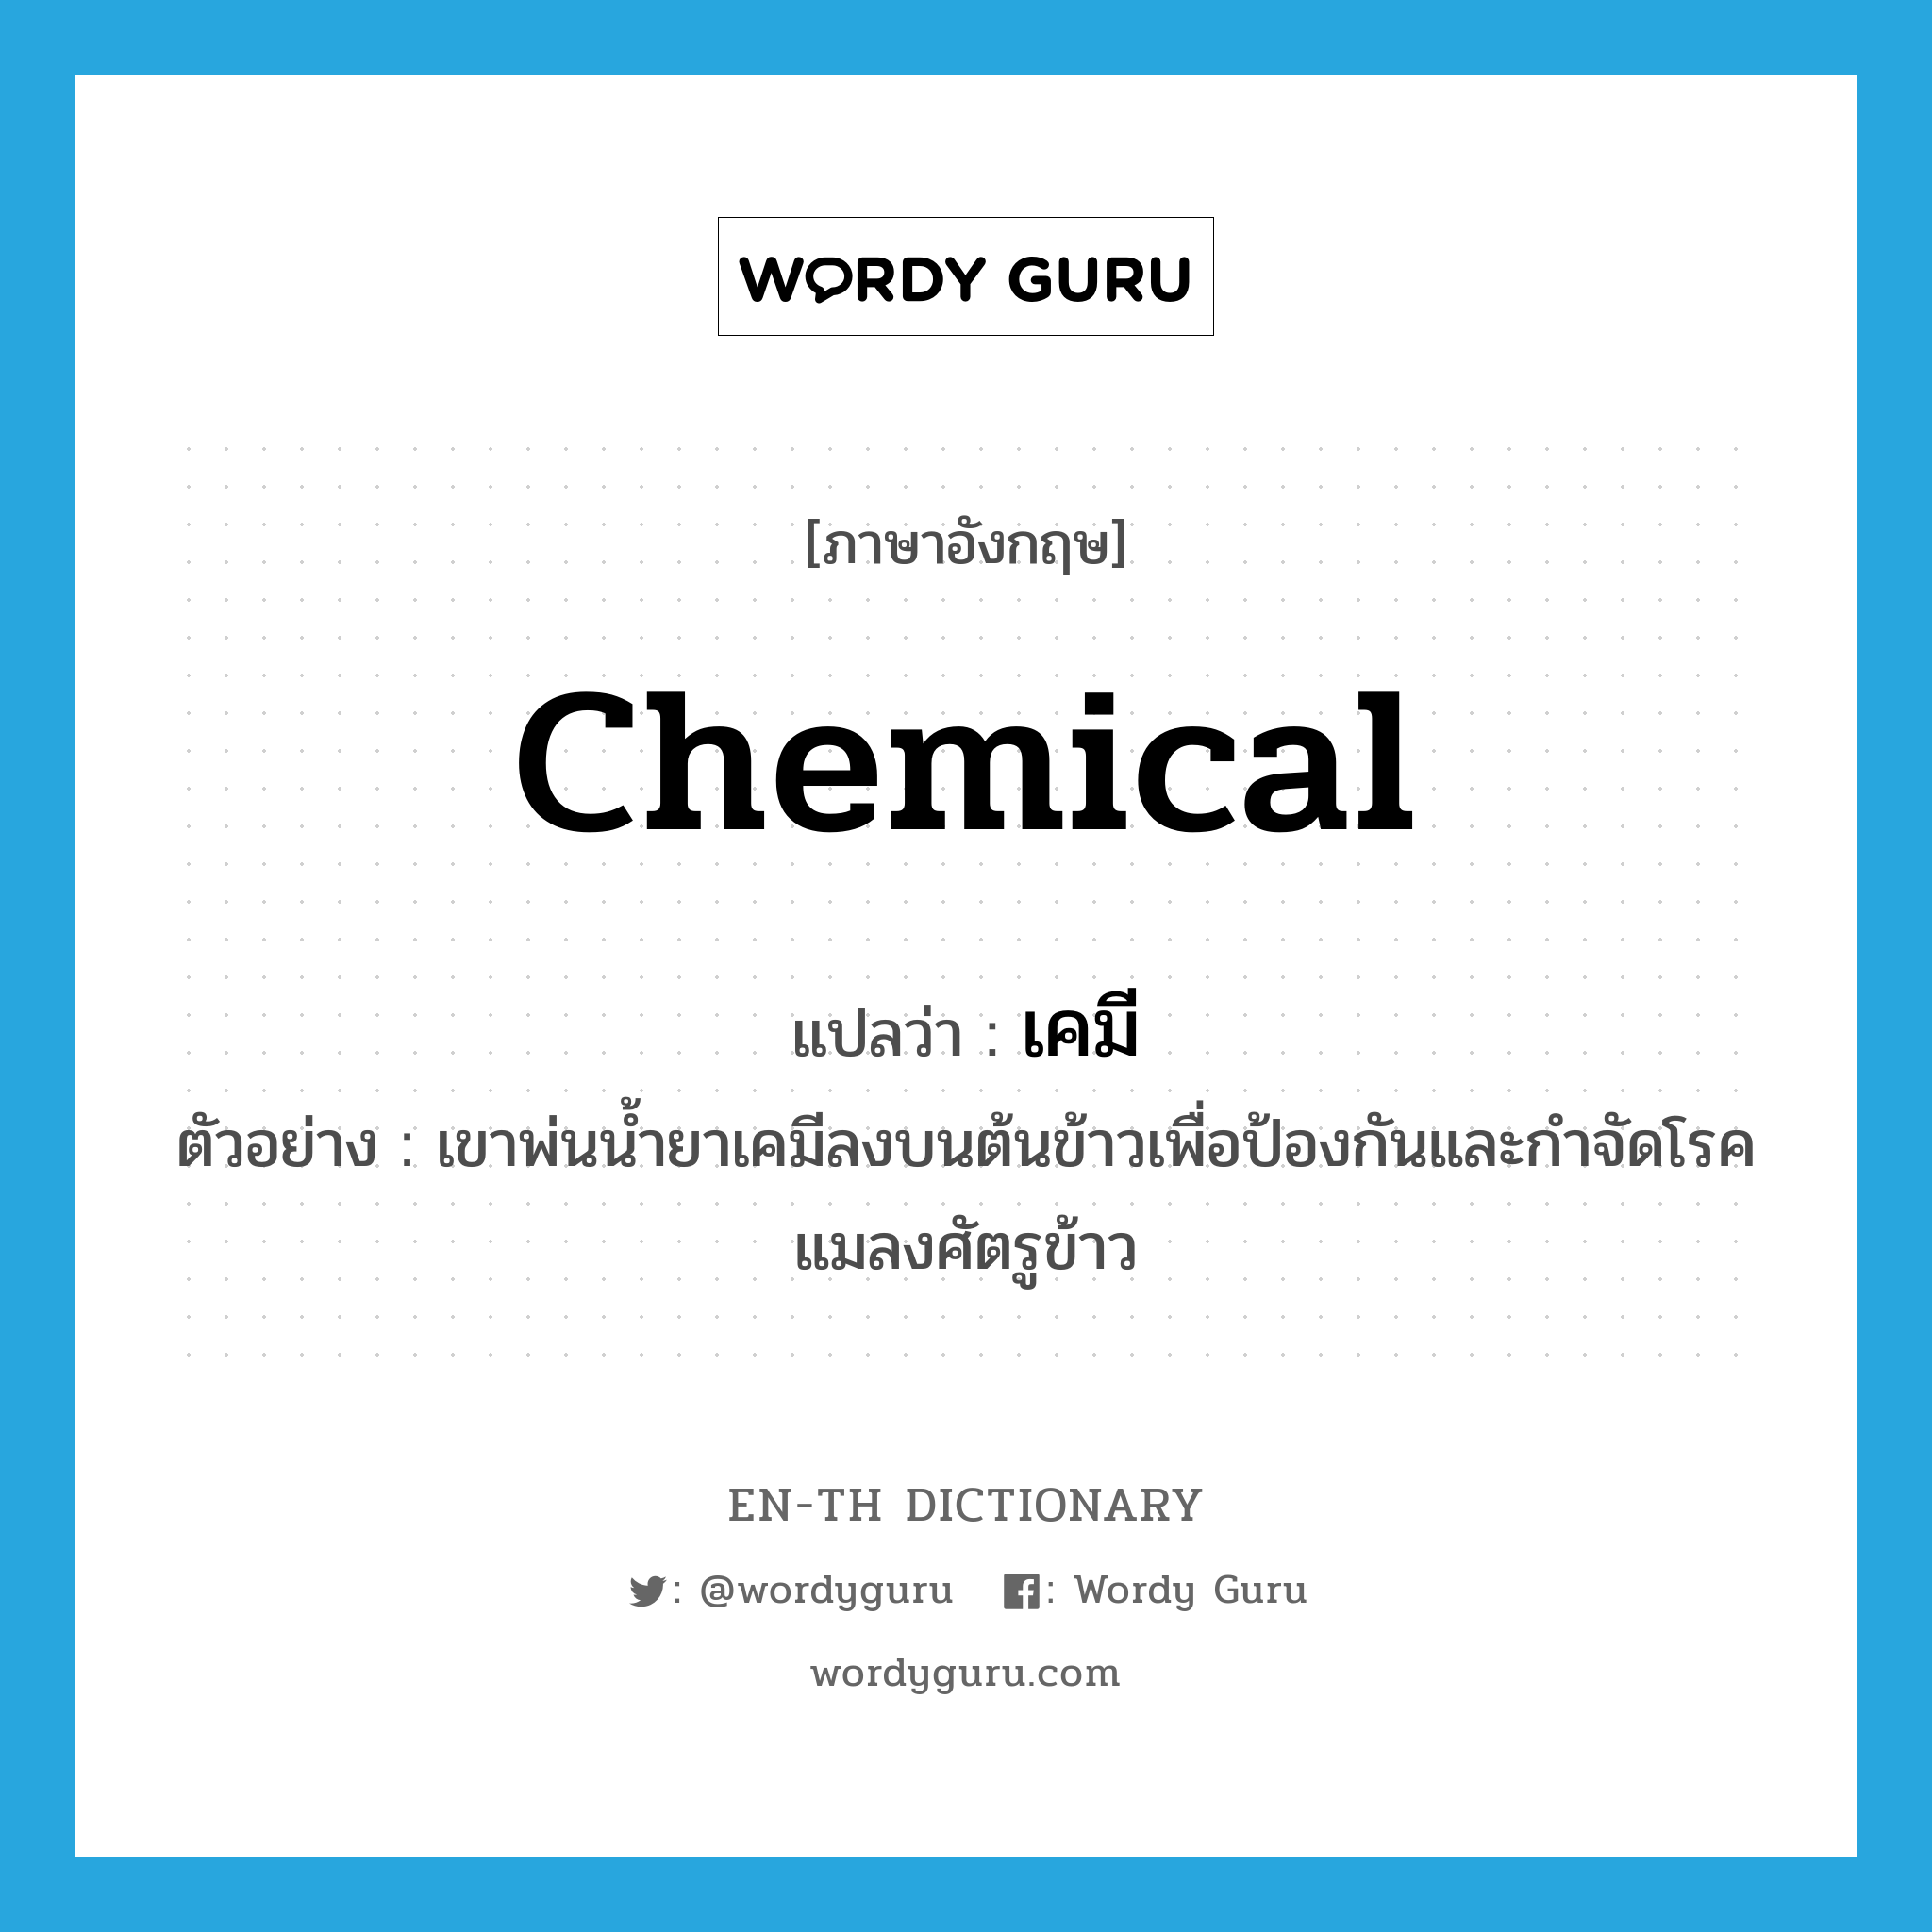 chemical แปลว่า?, คำศัพท์ภาษาอังกฤษ chemical แปลว่า เคมี ประเภท N ตัวอย่าง เขาพ่นน้ำยาเคมีลงบนต้นข้าวเพื่อป้องกันและกำจัดโรคแมลงศัตรูข้าว หมวด N